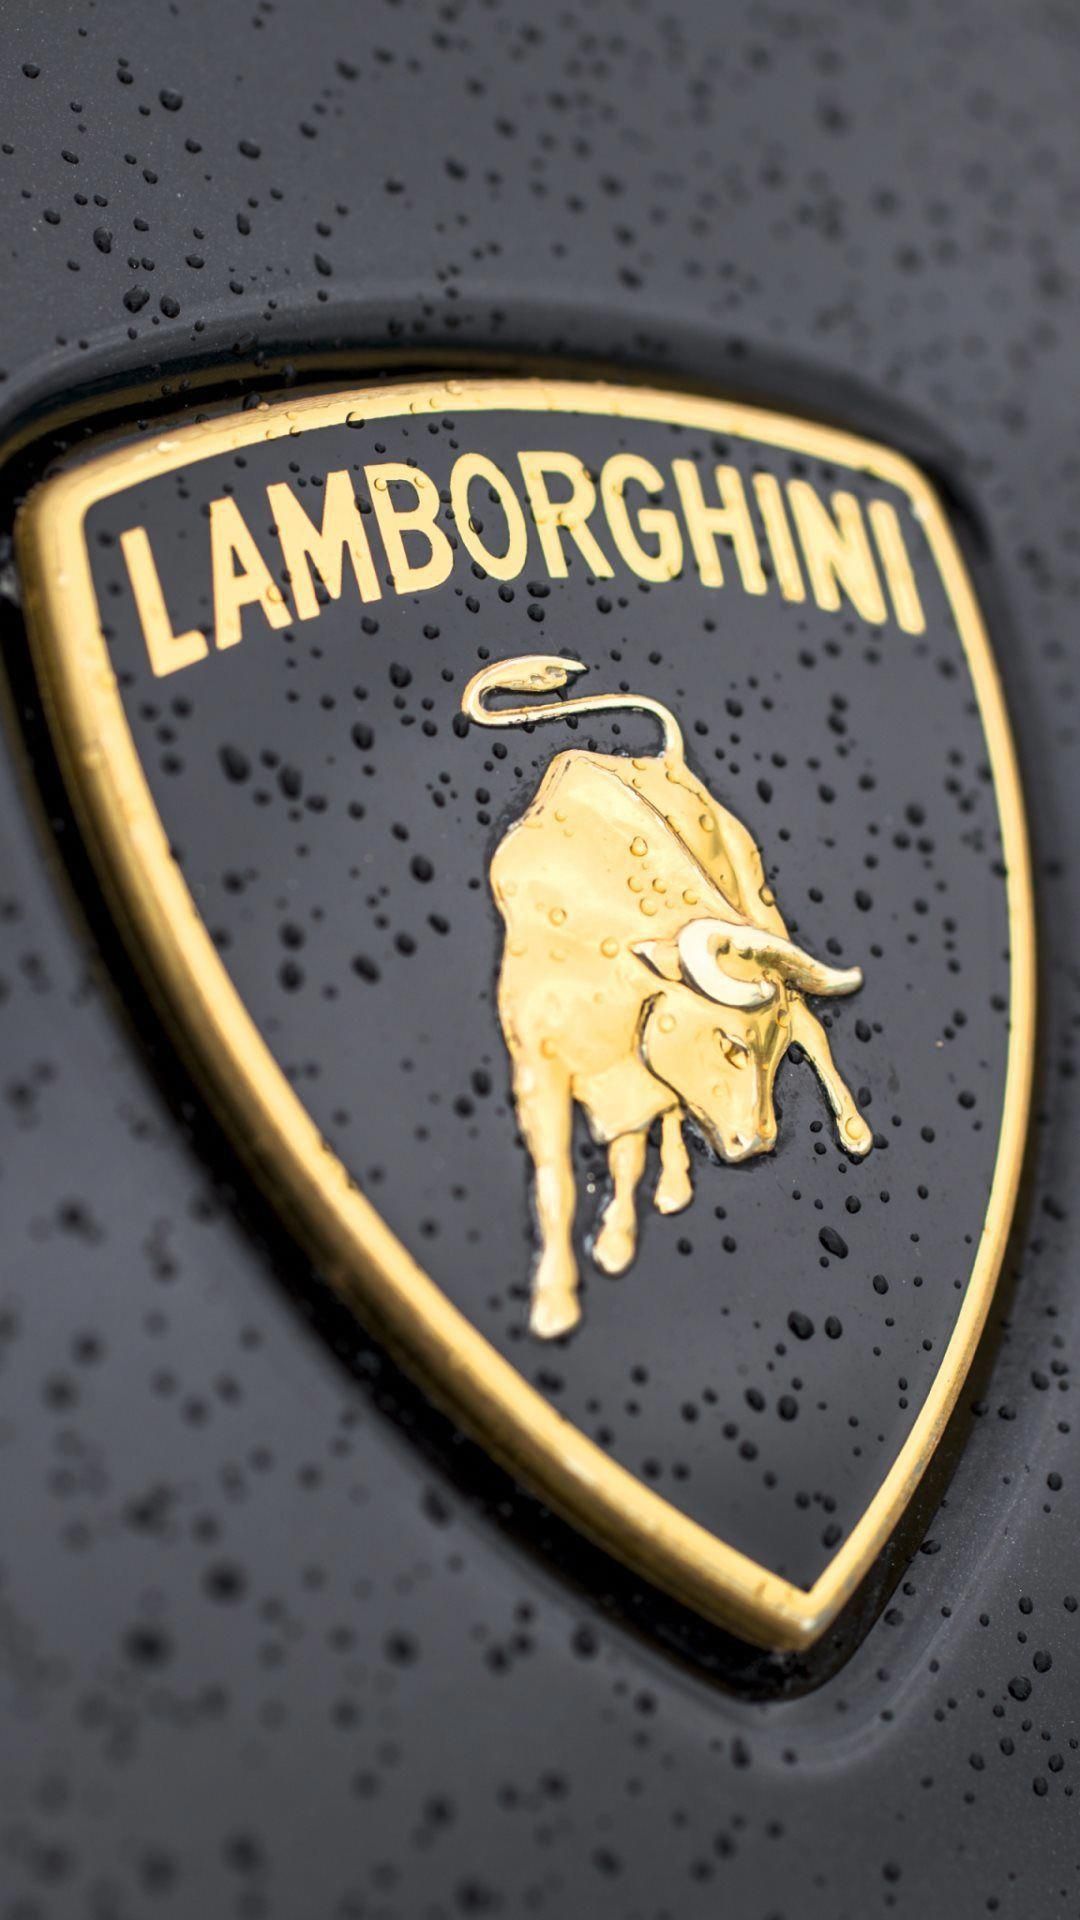 Lamborghini Logo On Car - HD Wallpaper 